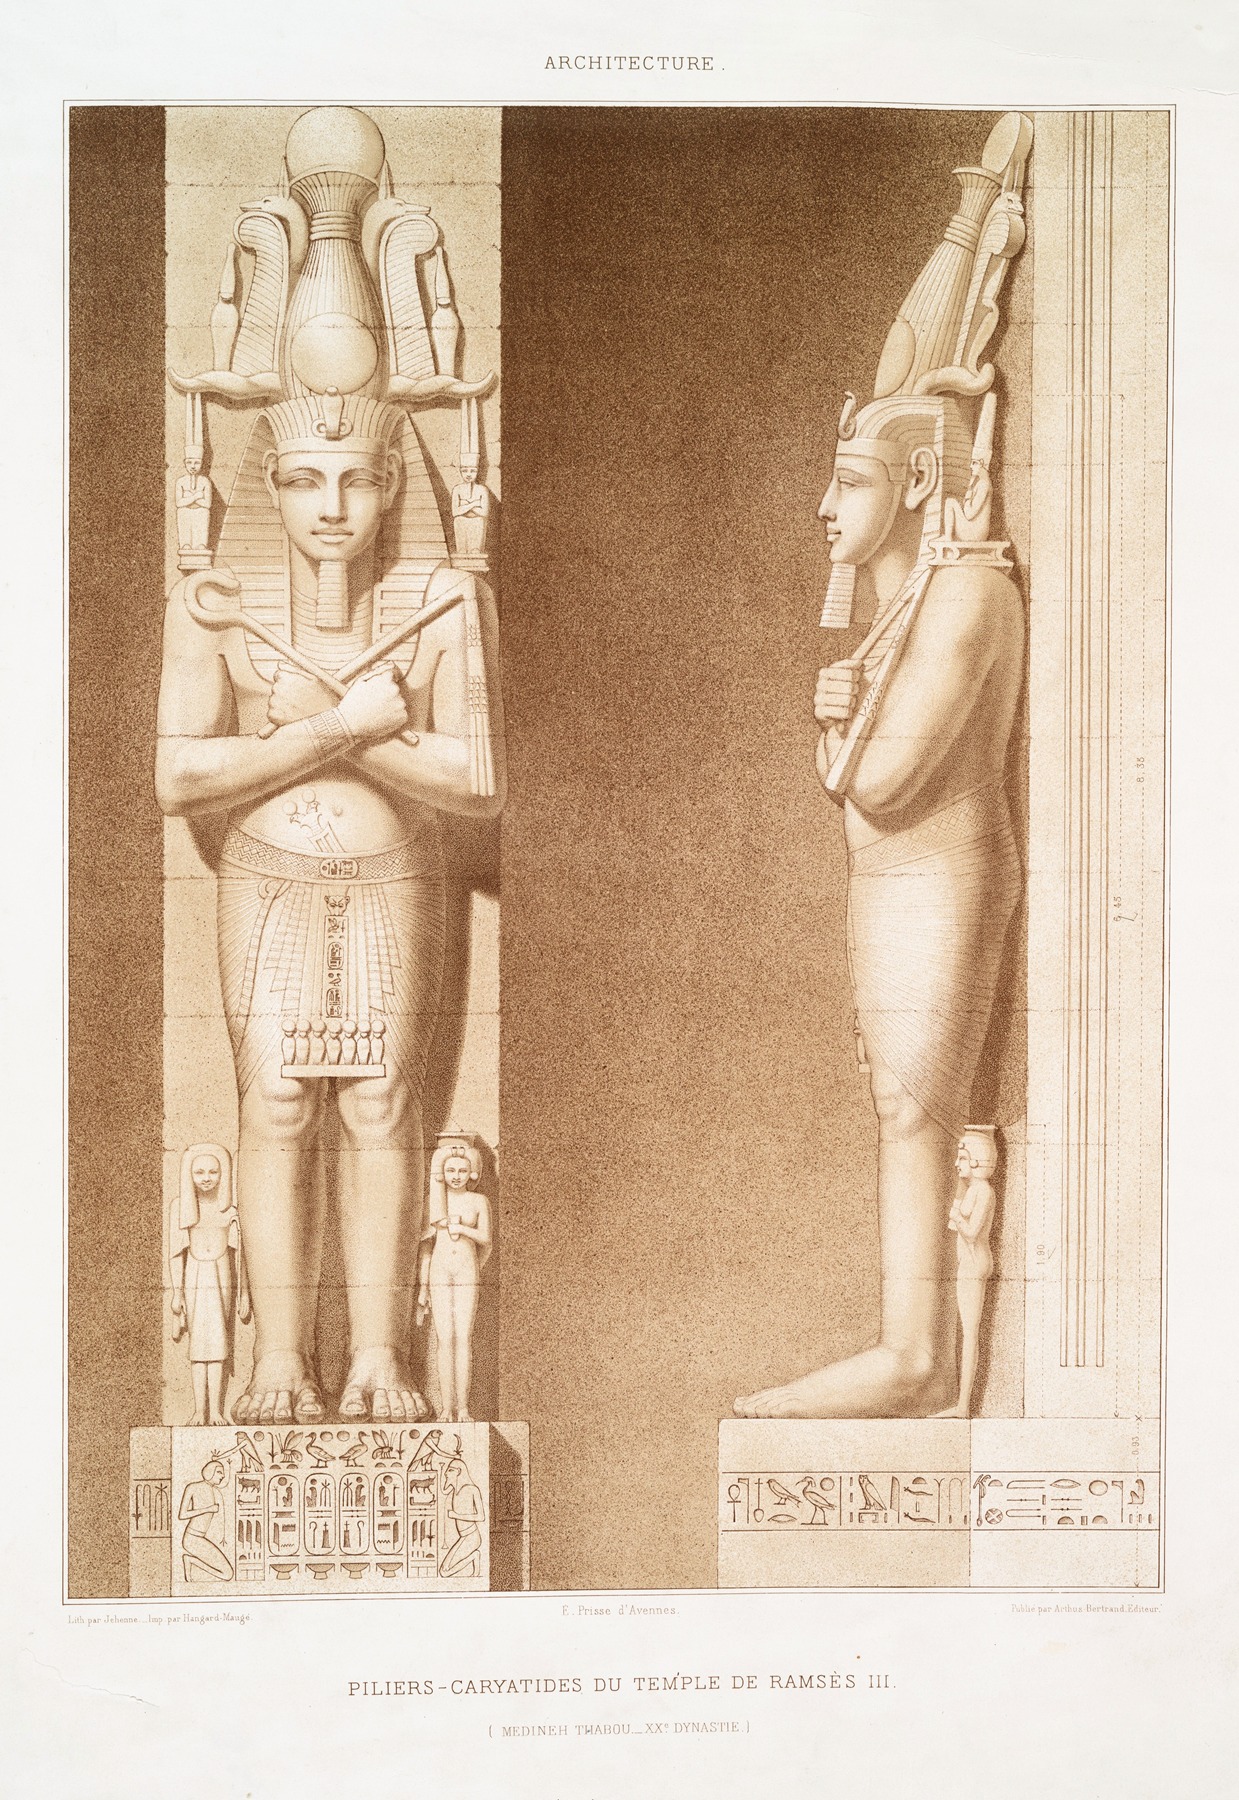 Émile Prisse d'Avennes - Architecture; piliers-caryatides du temple de Ramsès III (Medineh Thabou — XXe. dynastie)